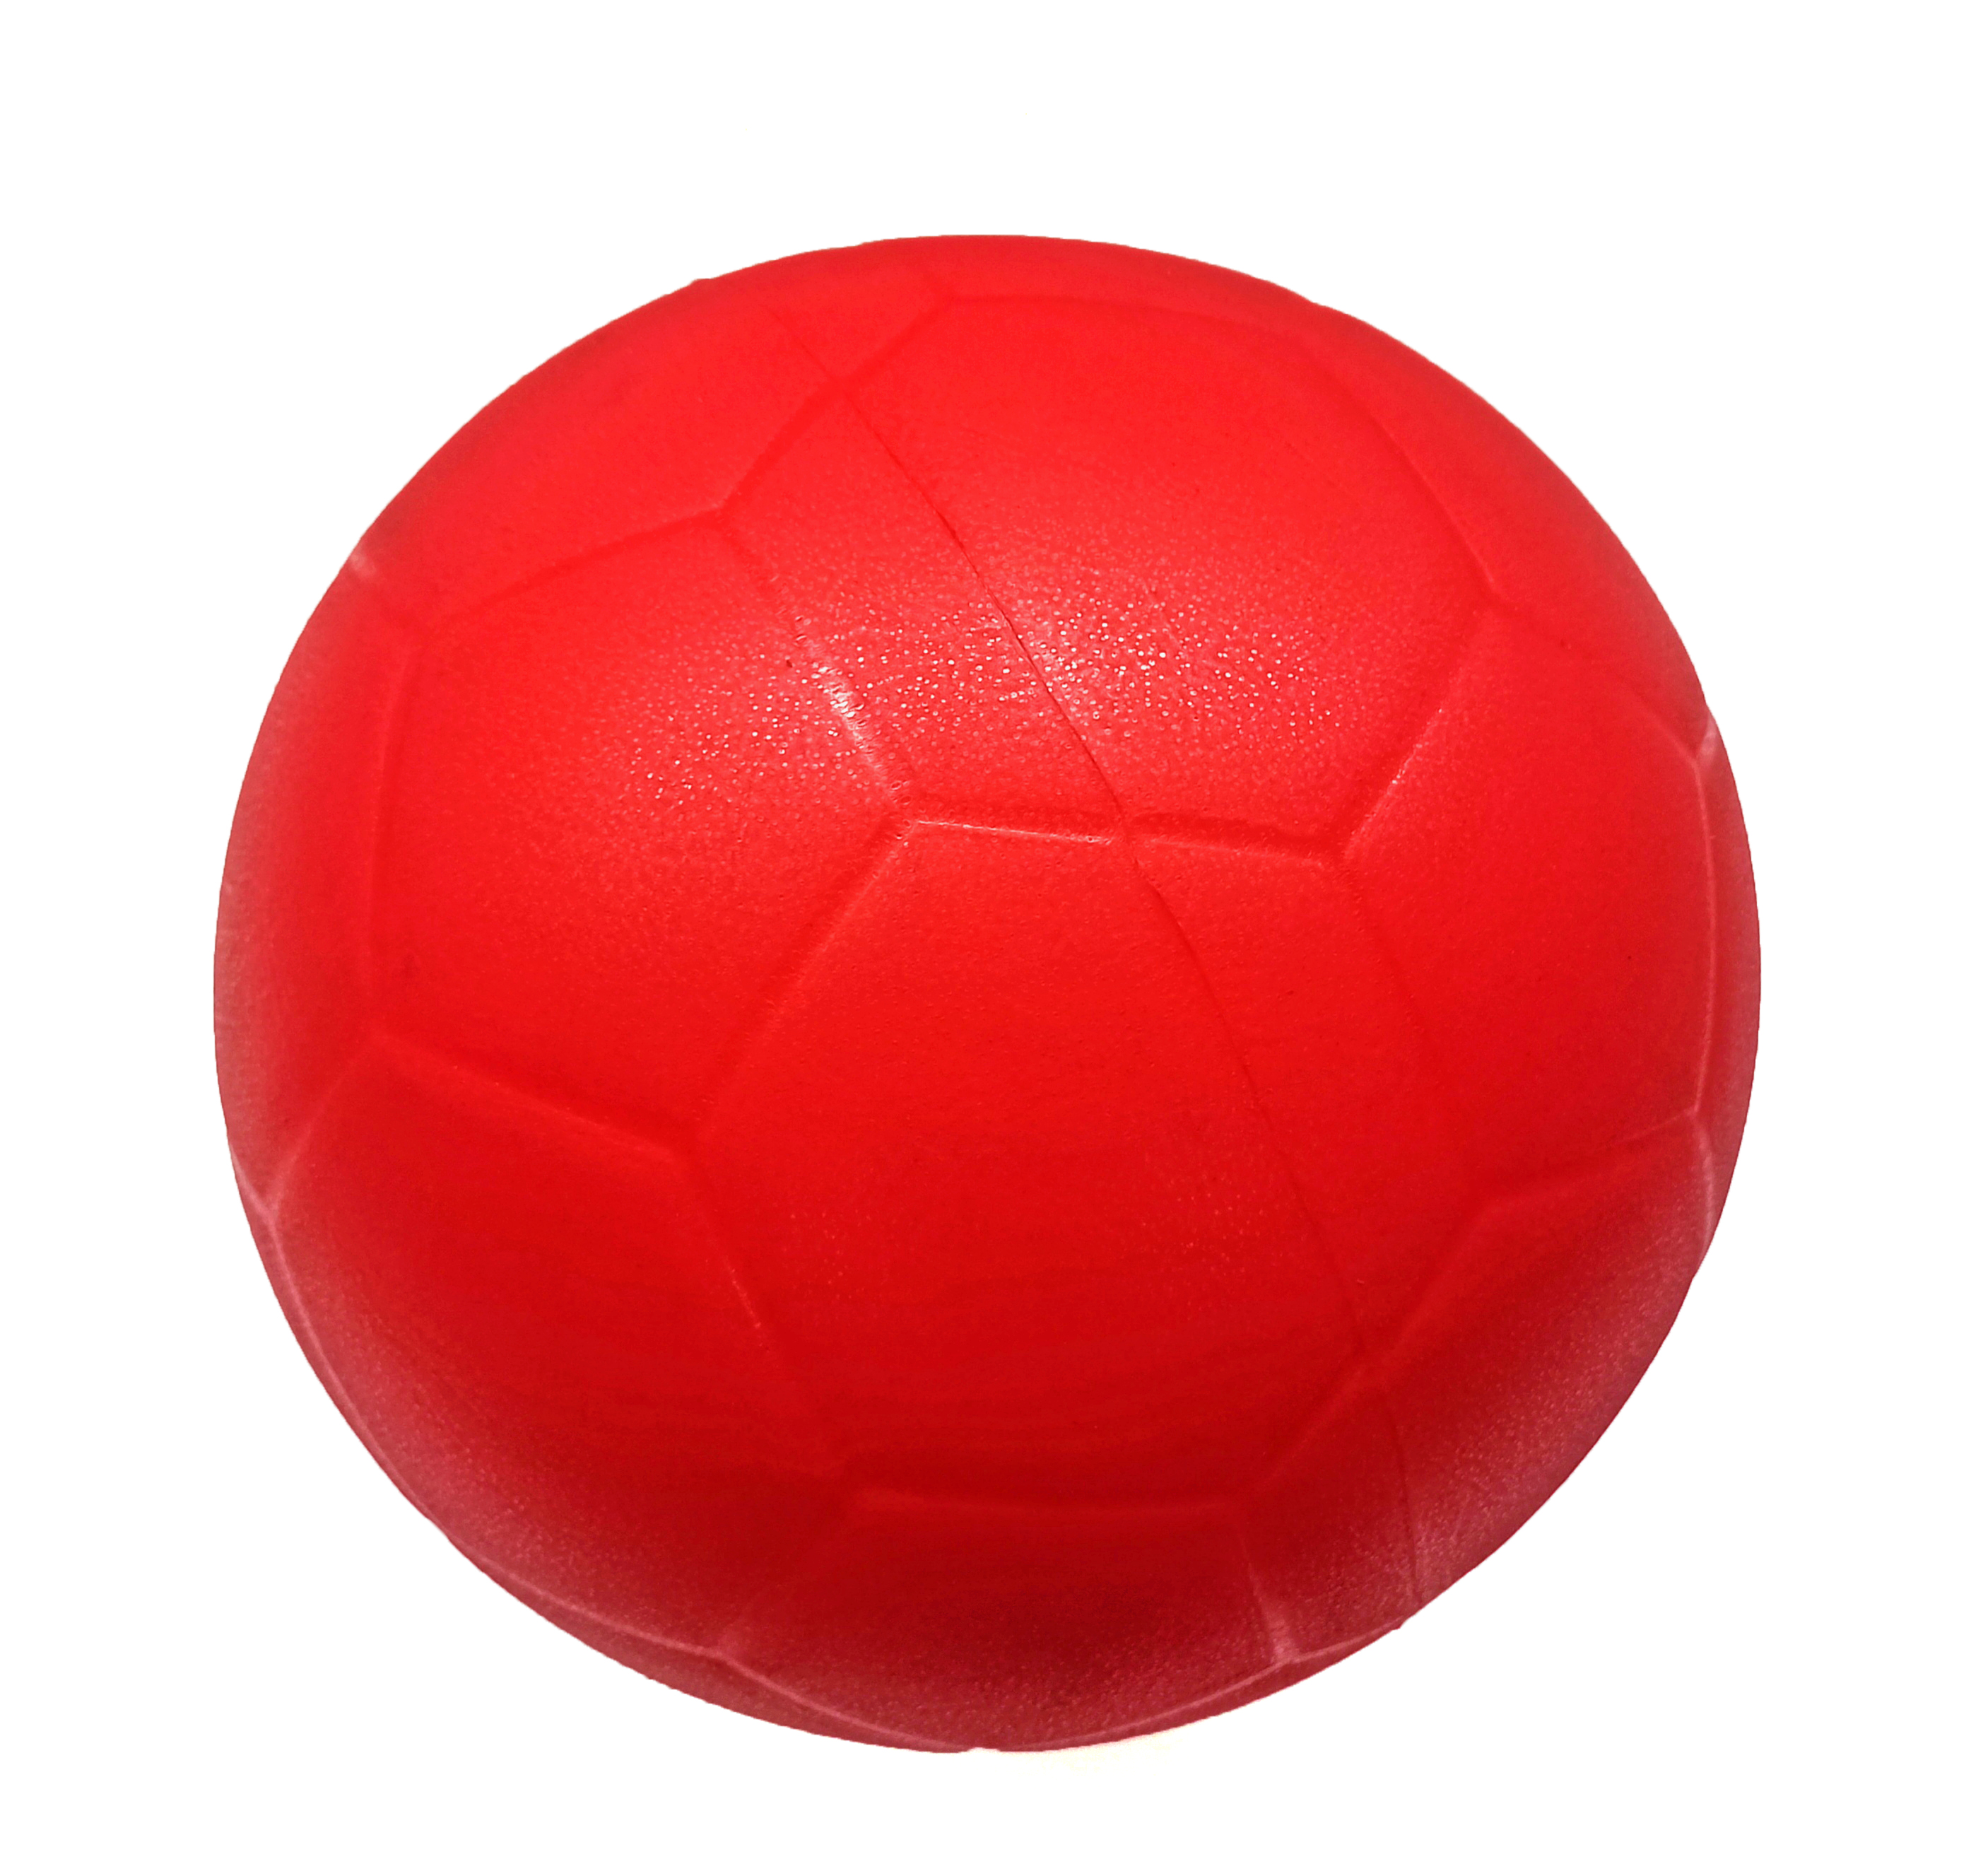 Óriás foci kidobó labda, piros, 25 cm